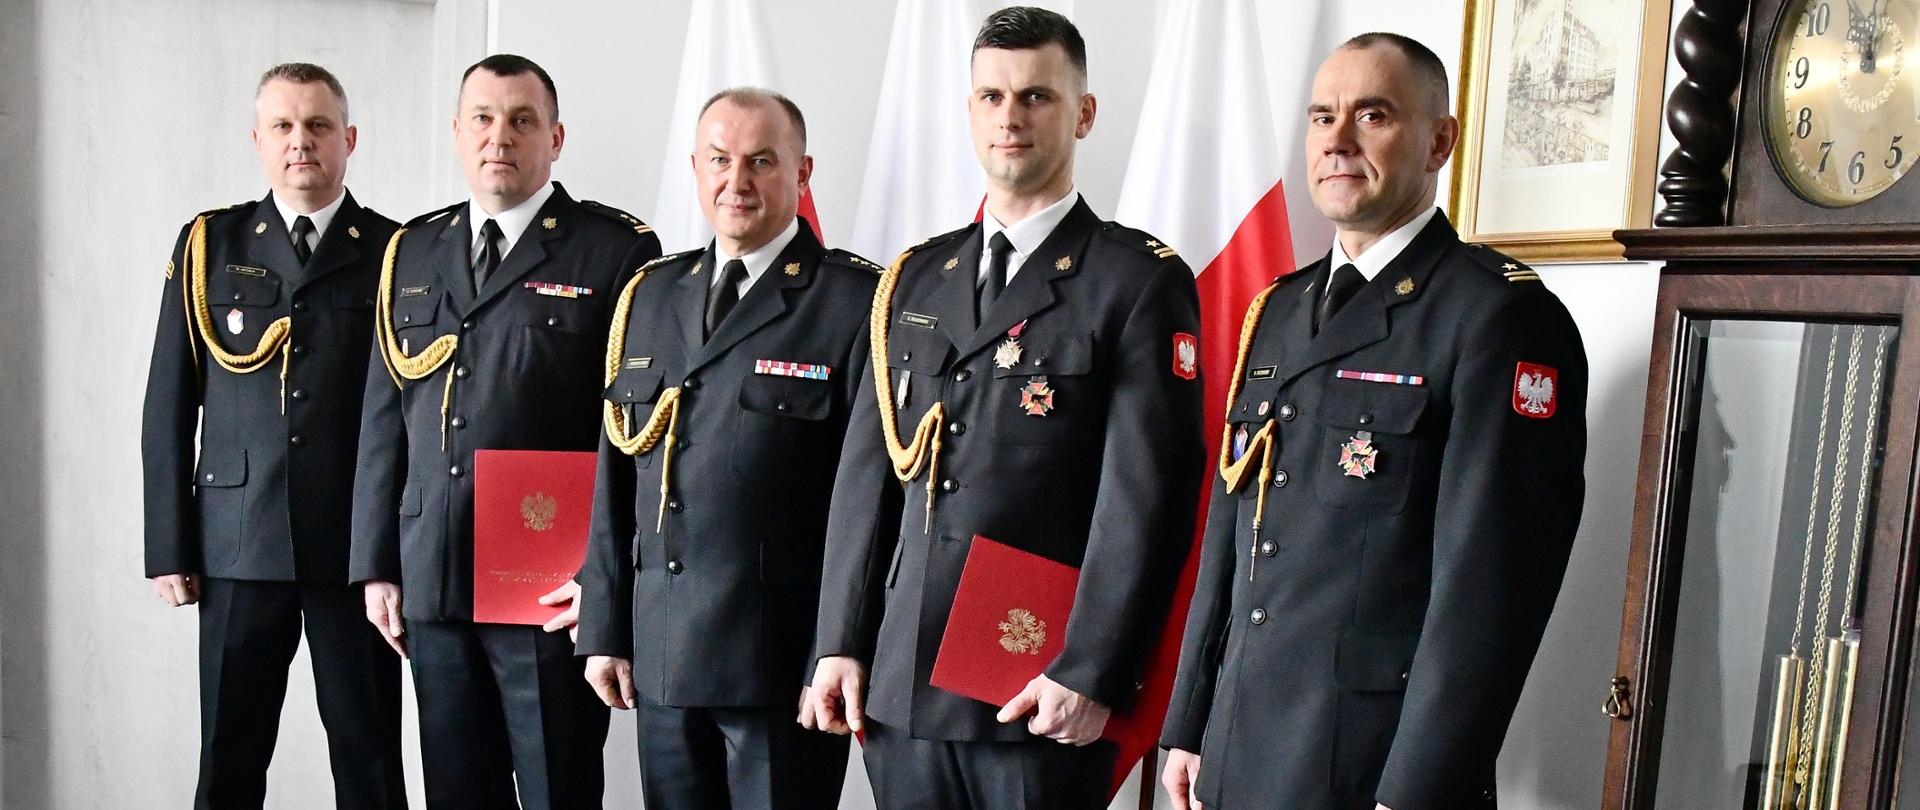 Pięciu strażaków w mundurach wyjściowych ze sznurem stoi obok siebie drugi i czwarty strażak trzyma teczkę za nimi są trzy flagi Polski na ścianie wisi obraz obok stoi zegar.